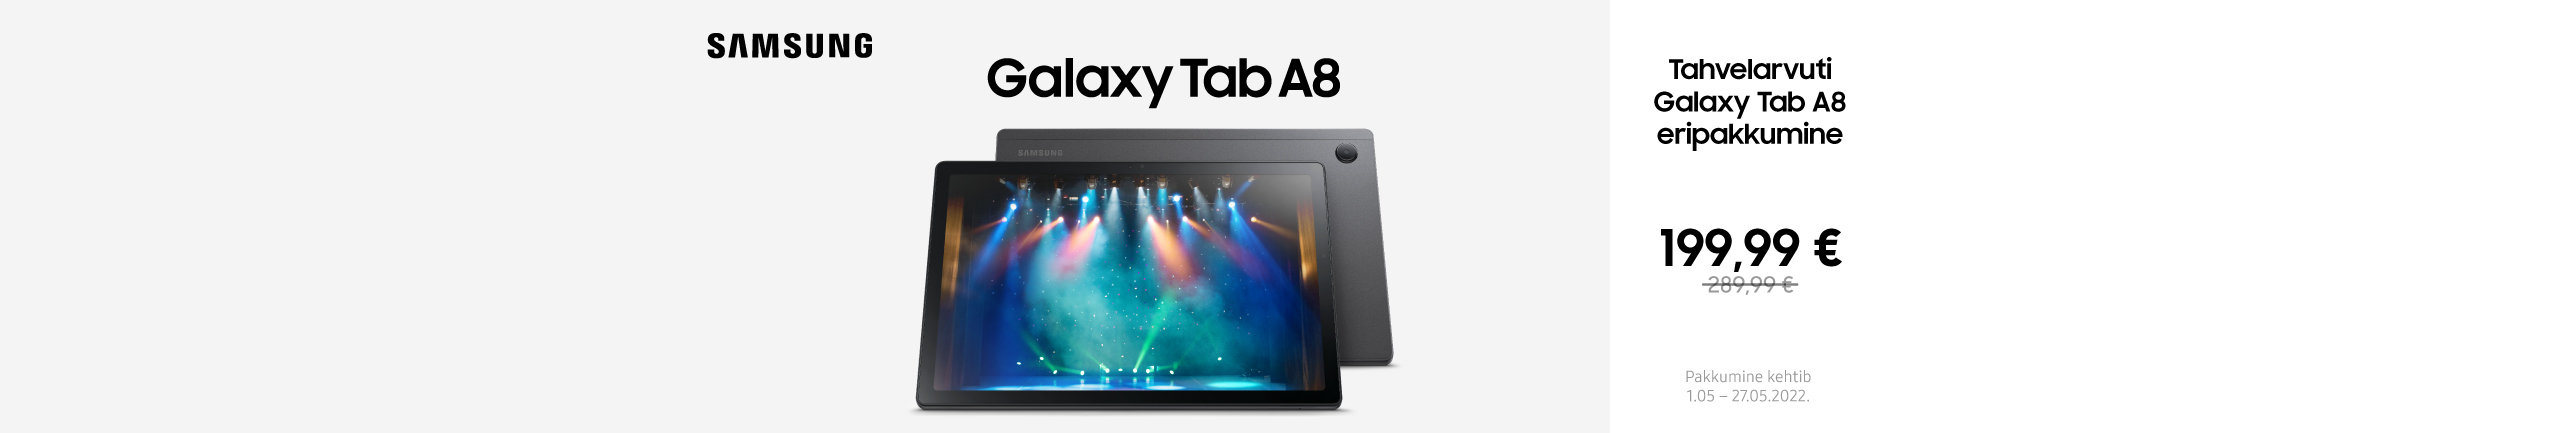 Samsung Galaxy Tab A8 sale